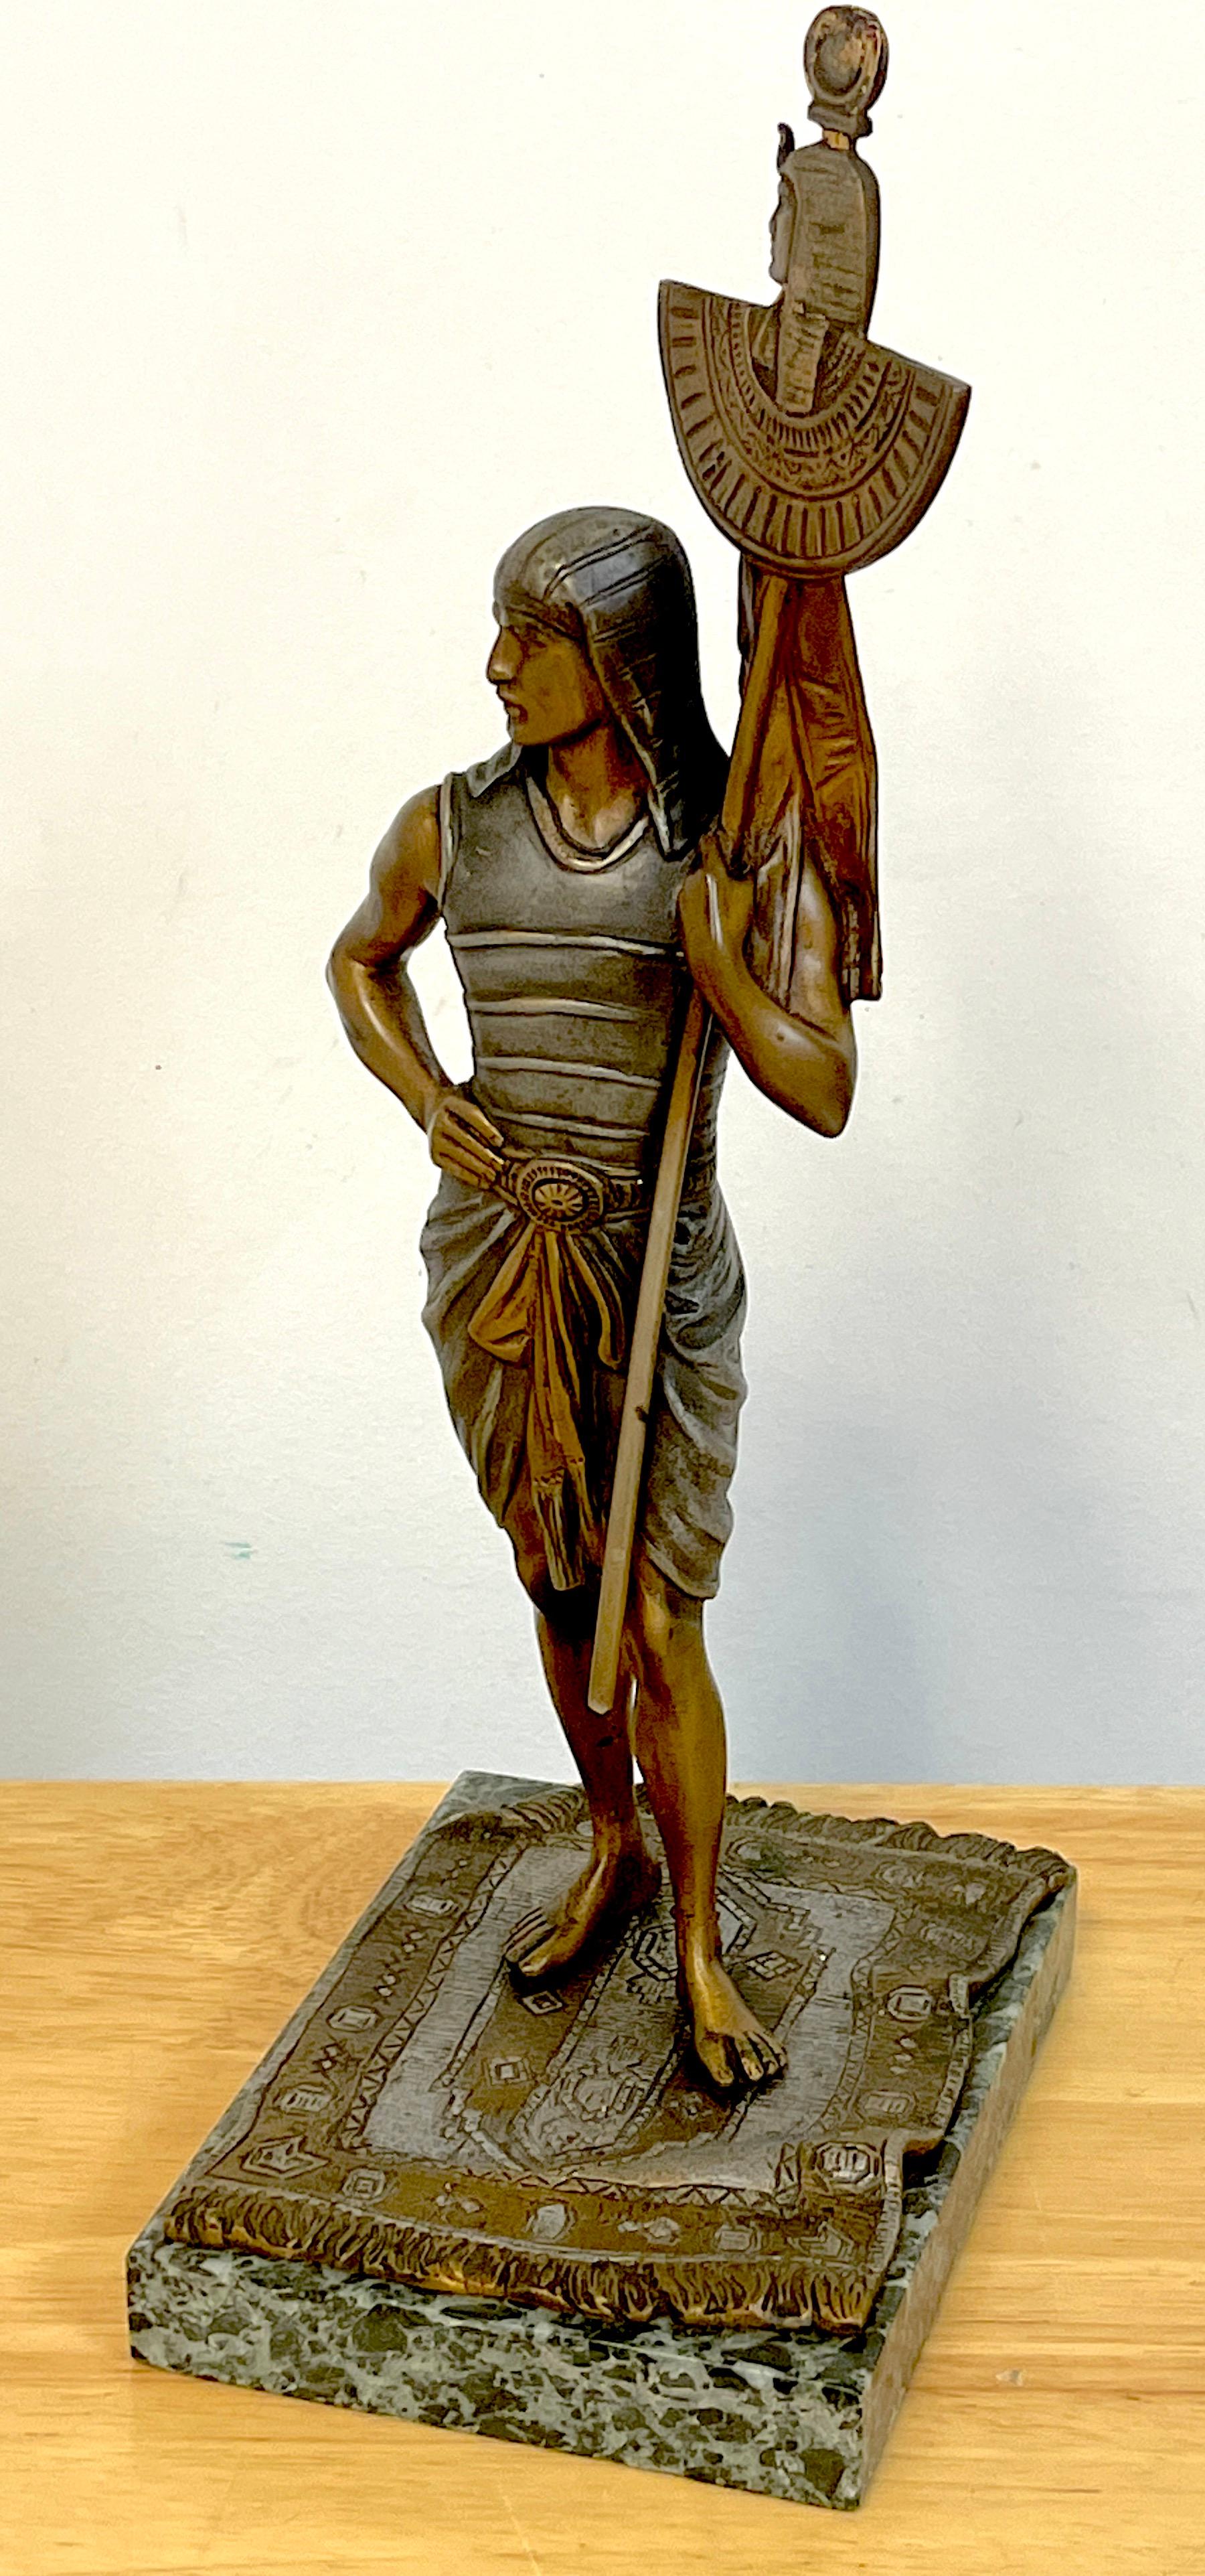 Ägyptische Dienerin aus Bronze, Wien, kalt bemalt, Bergman zugeschrieben
Mit exquisitem Detail die stehende ägyptische Dienerin auf einem Perserteppich, die einen Zeremonienstab hält.
Offensichtlich unsigniert. Erhebt sich auf einem Grünspan